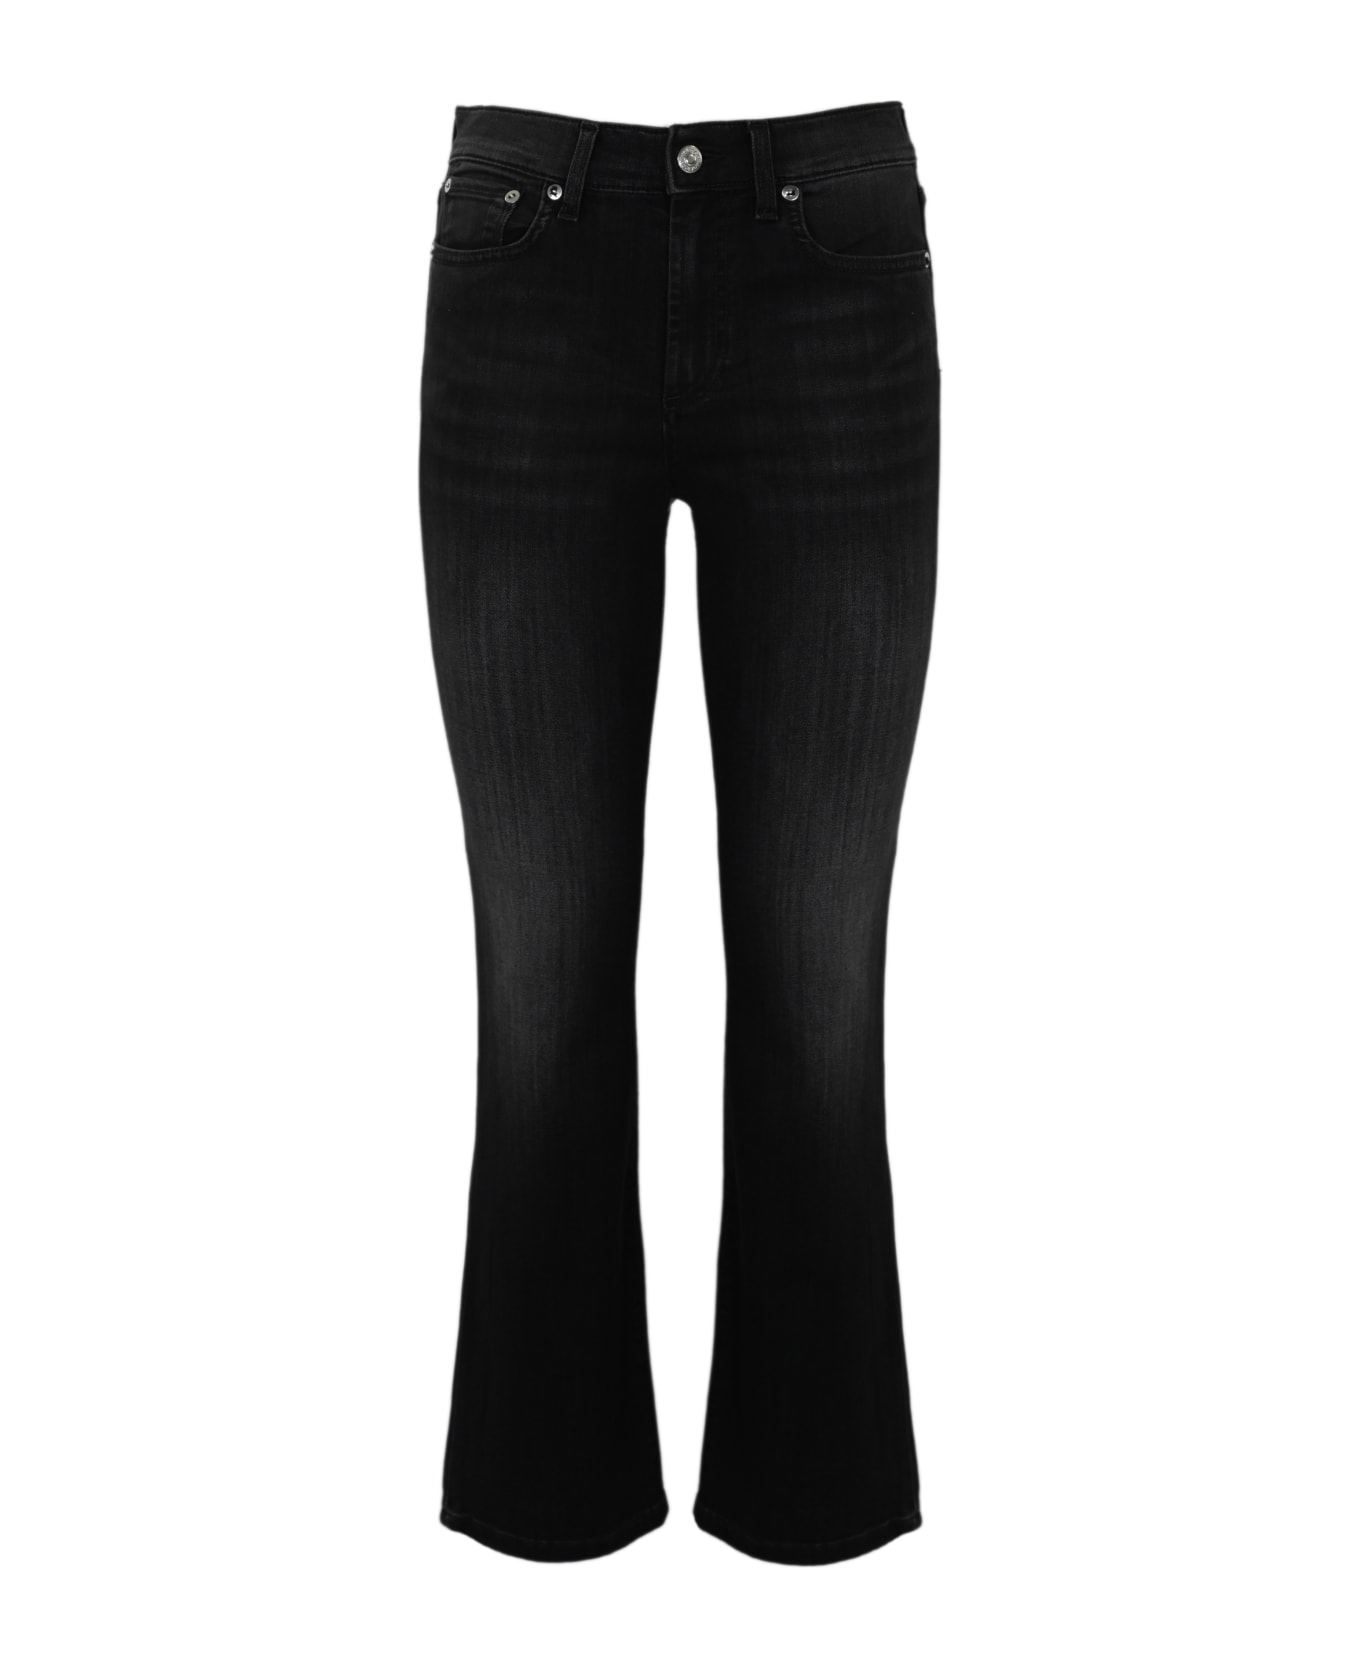 Roy Rogers Flare Jeans In Black Denim - Denim black